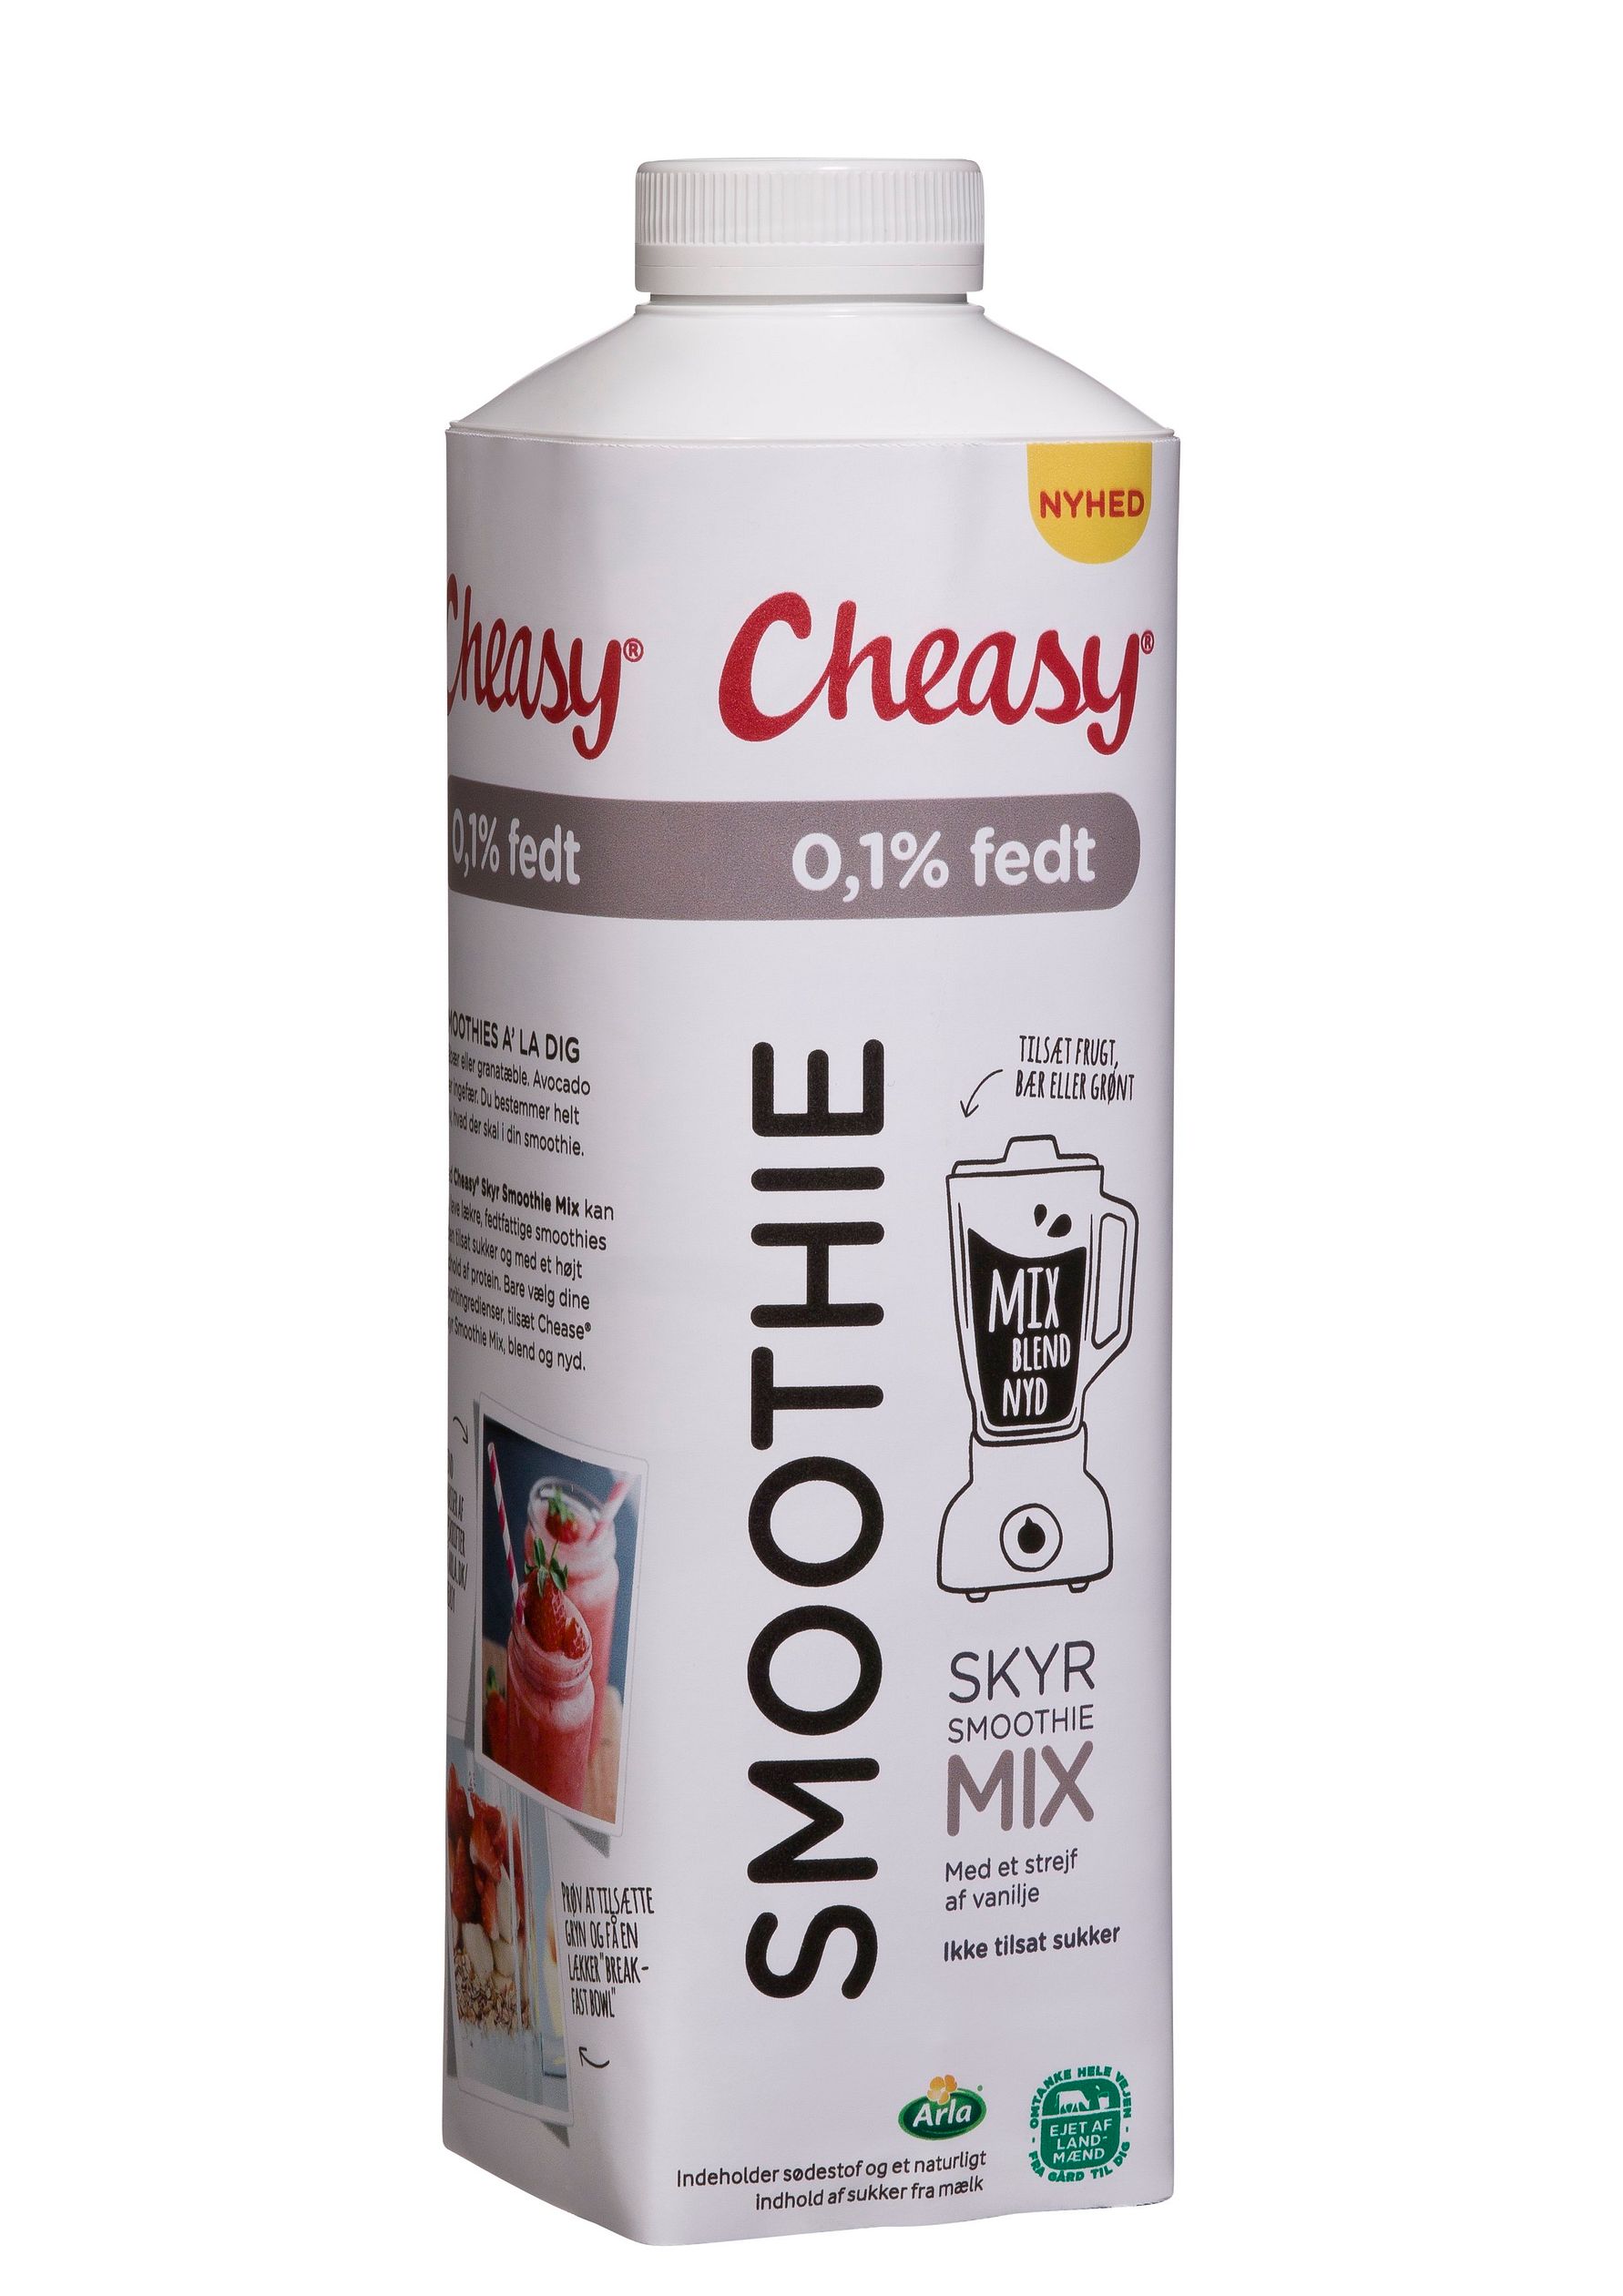 Cheasy lancerer fedtfattig og proteinrig smoothiebase uden tilsat sukker